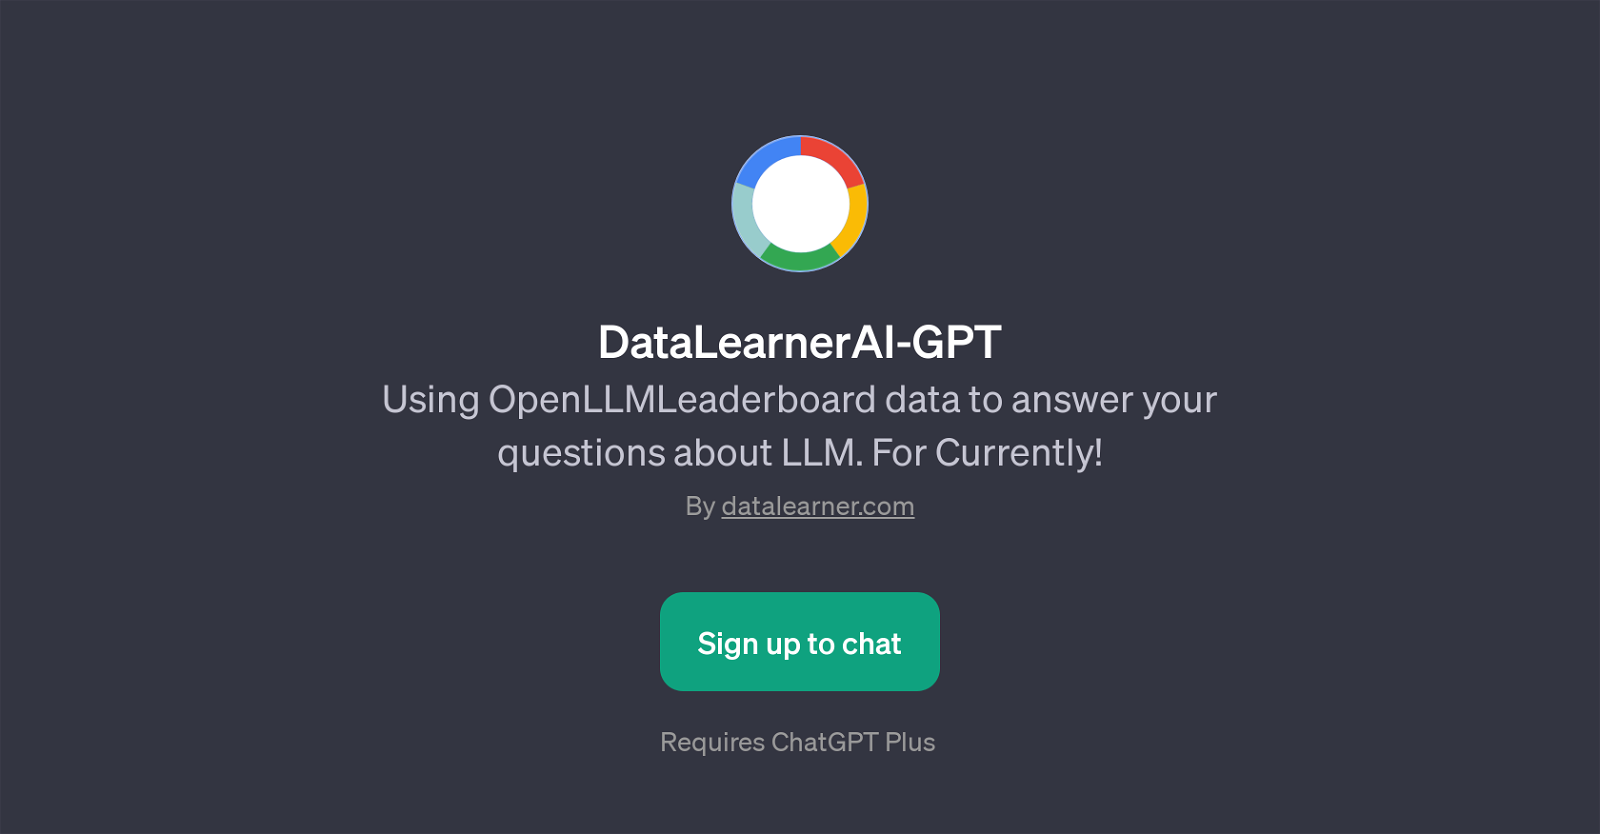 DataLearnerAI-GPT website